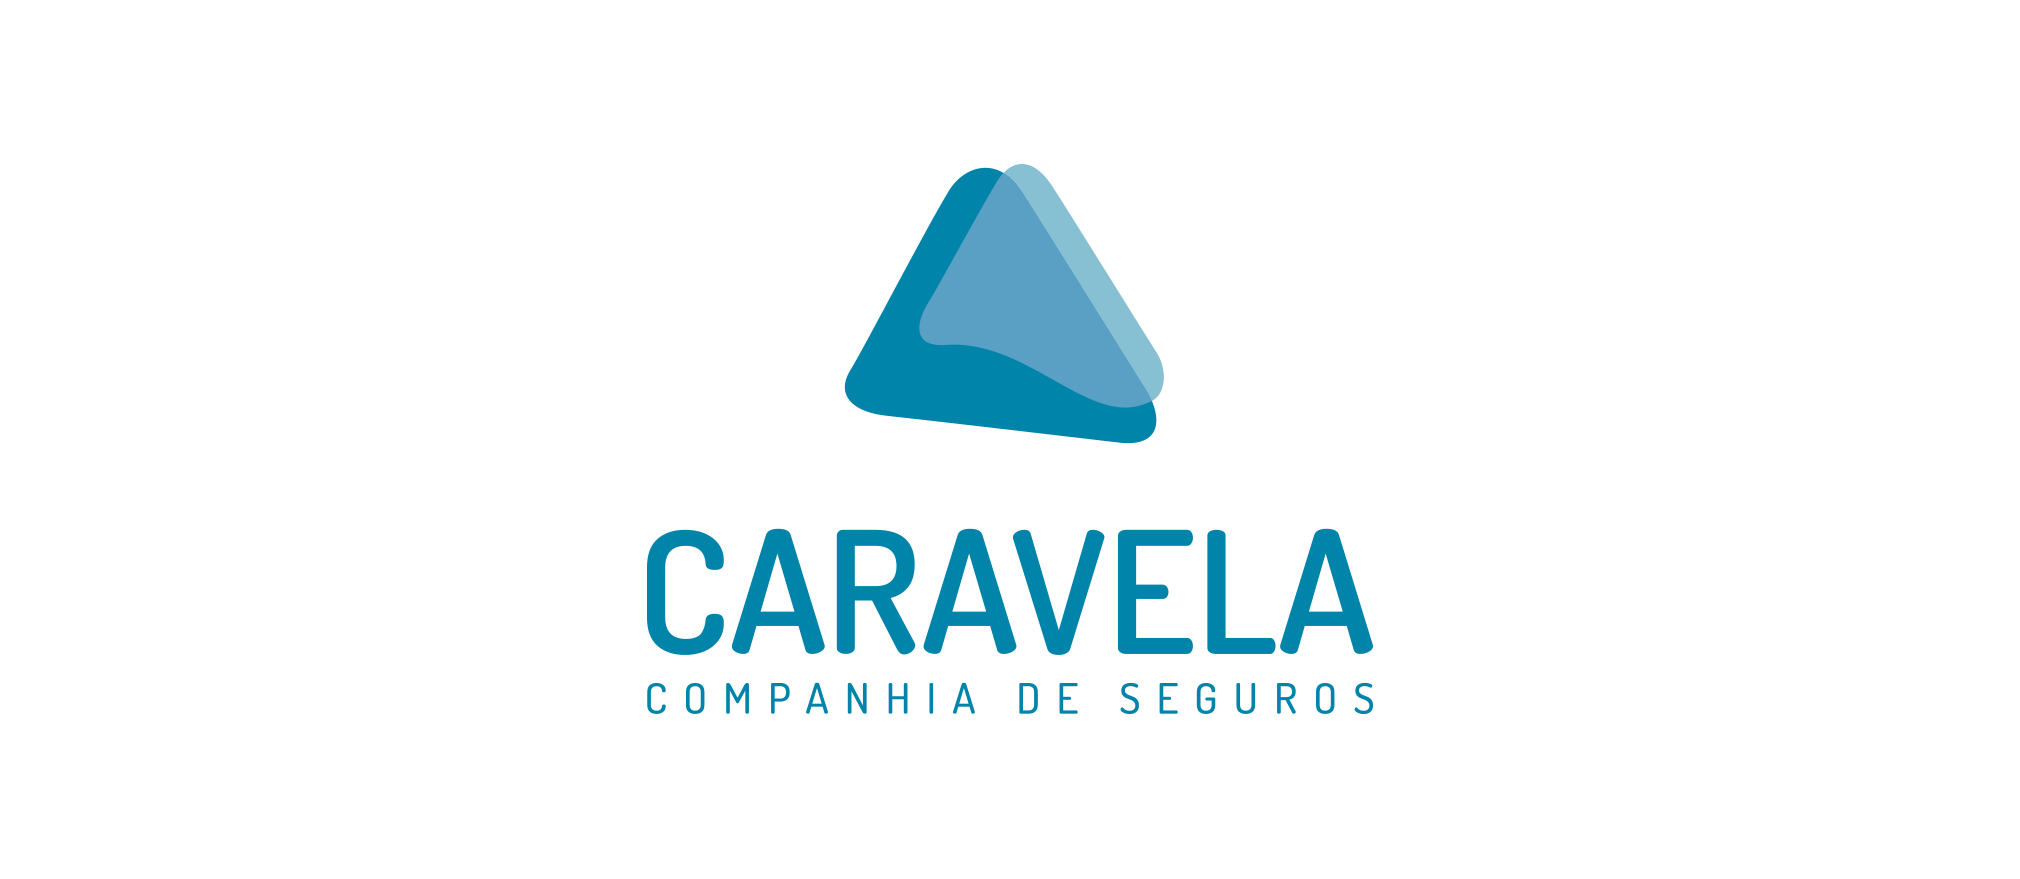 Caravela_Logo-1